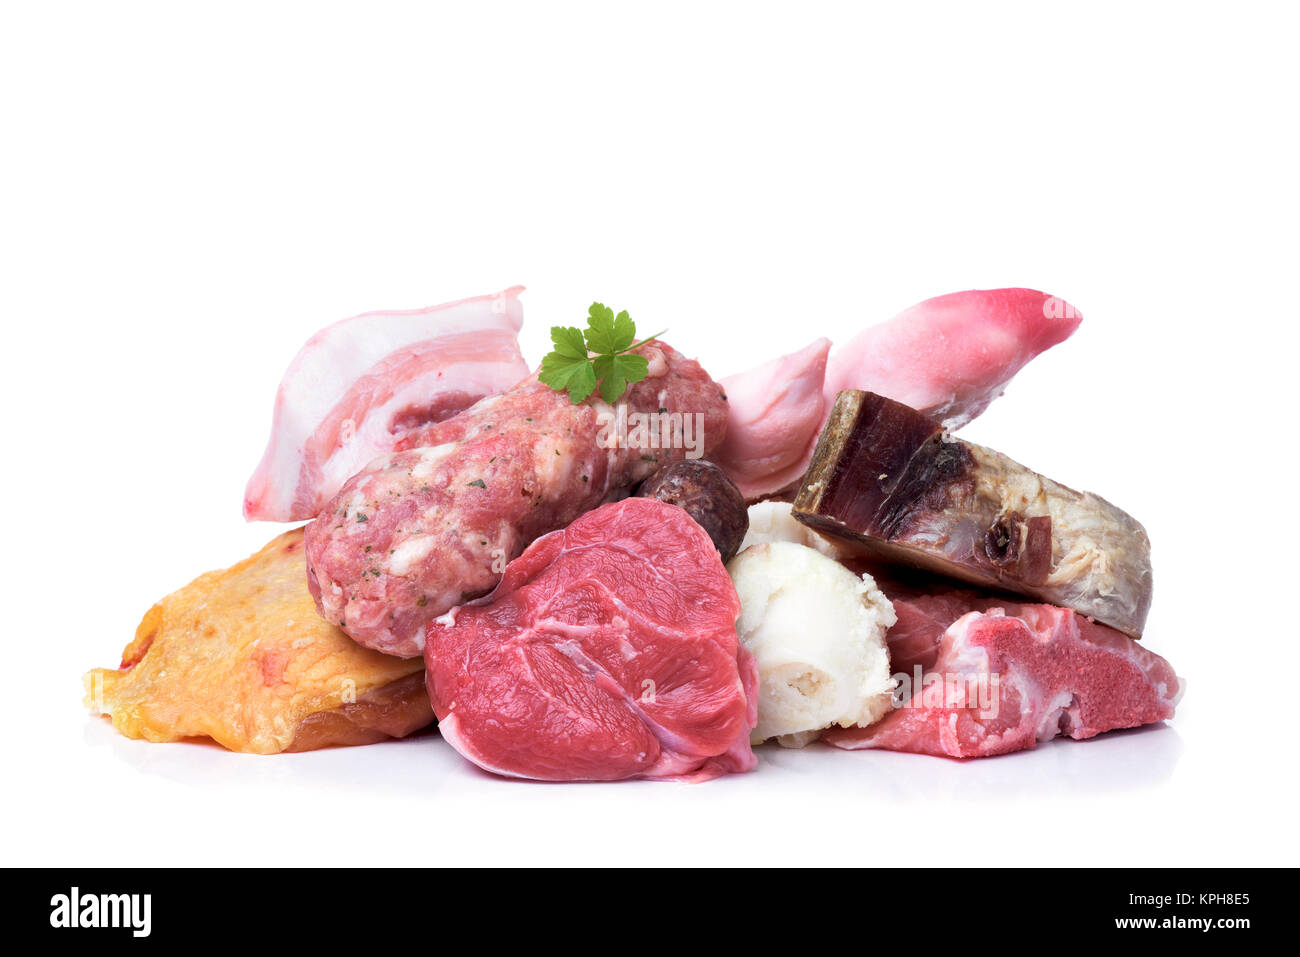 Nahaufnahme der einige ungekochte Stücke und Produkte von Huhn, Rind- und Schweinefleisch escudella vorzubereiten, eine Suppe typische von Katalonien, Spanien, auf einem weißen Hinterg Stockfoto